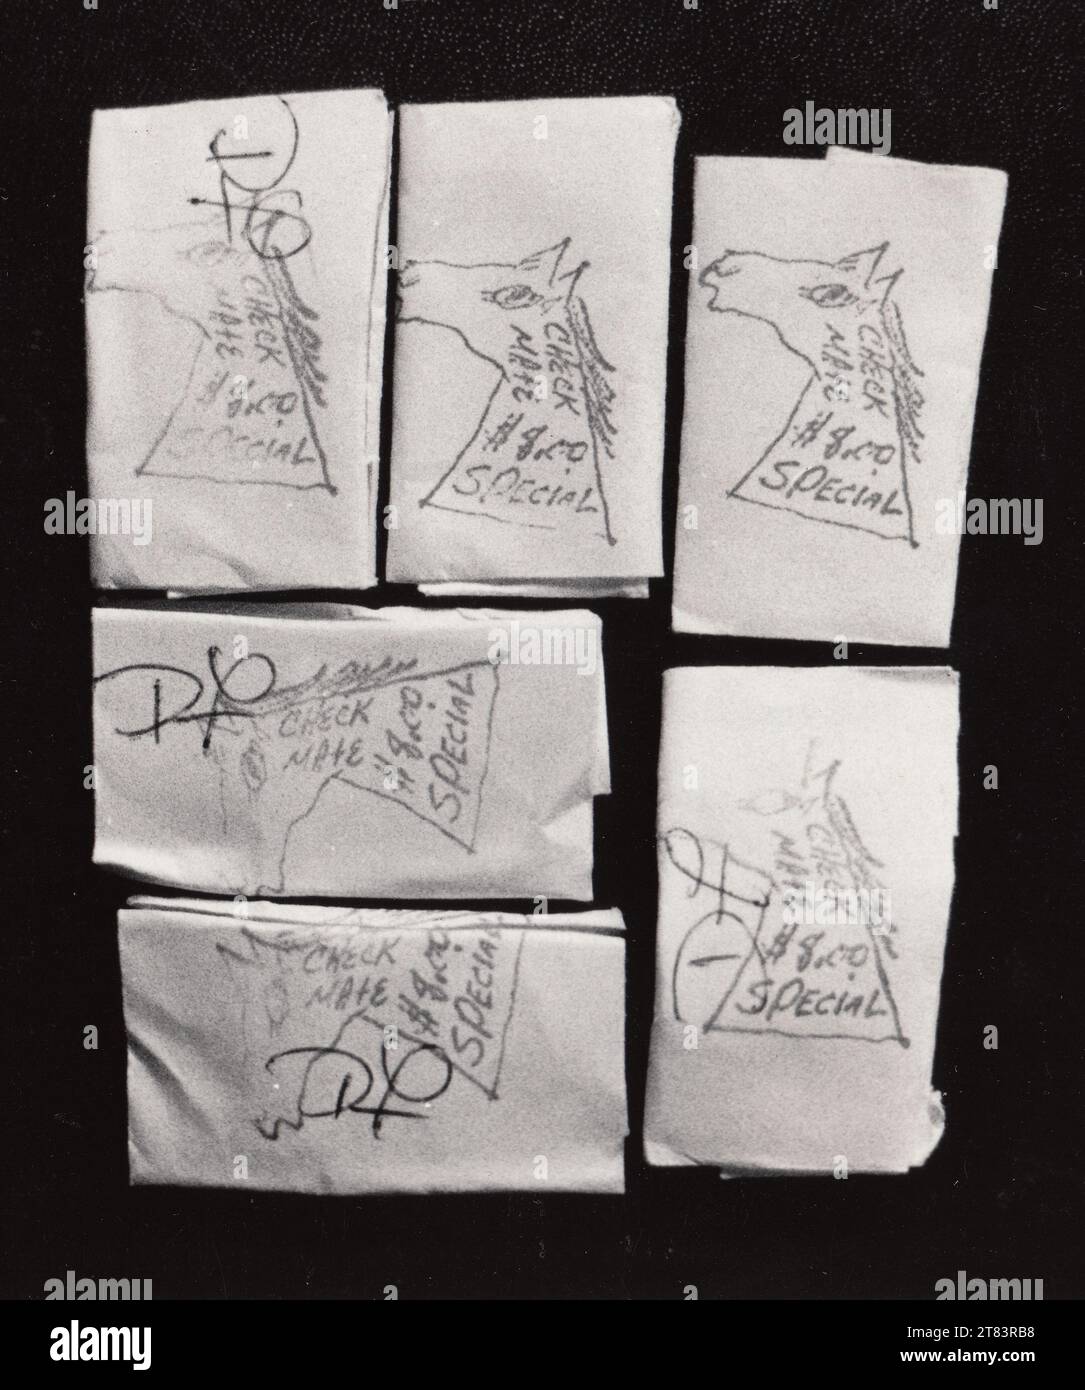 Héroïne, paquets d'héroïne de Checkmate. Vieille photo de presse des États-Unis. [1983 presse photo abus de drogue héroïne.] Banque D'Images